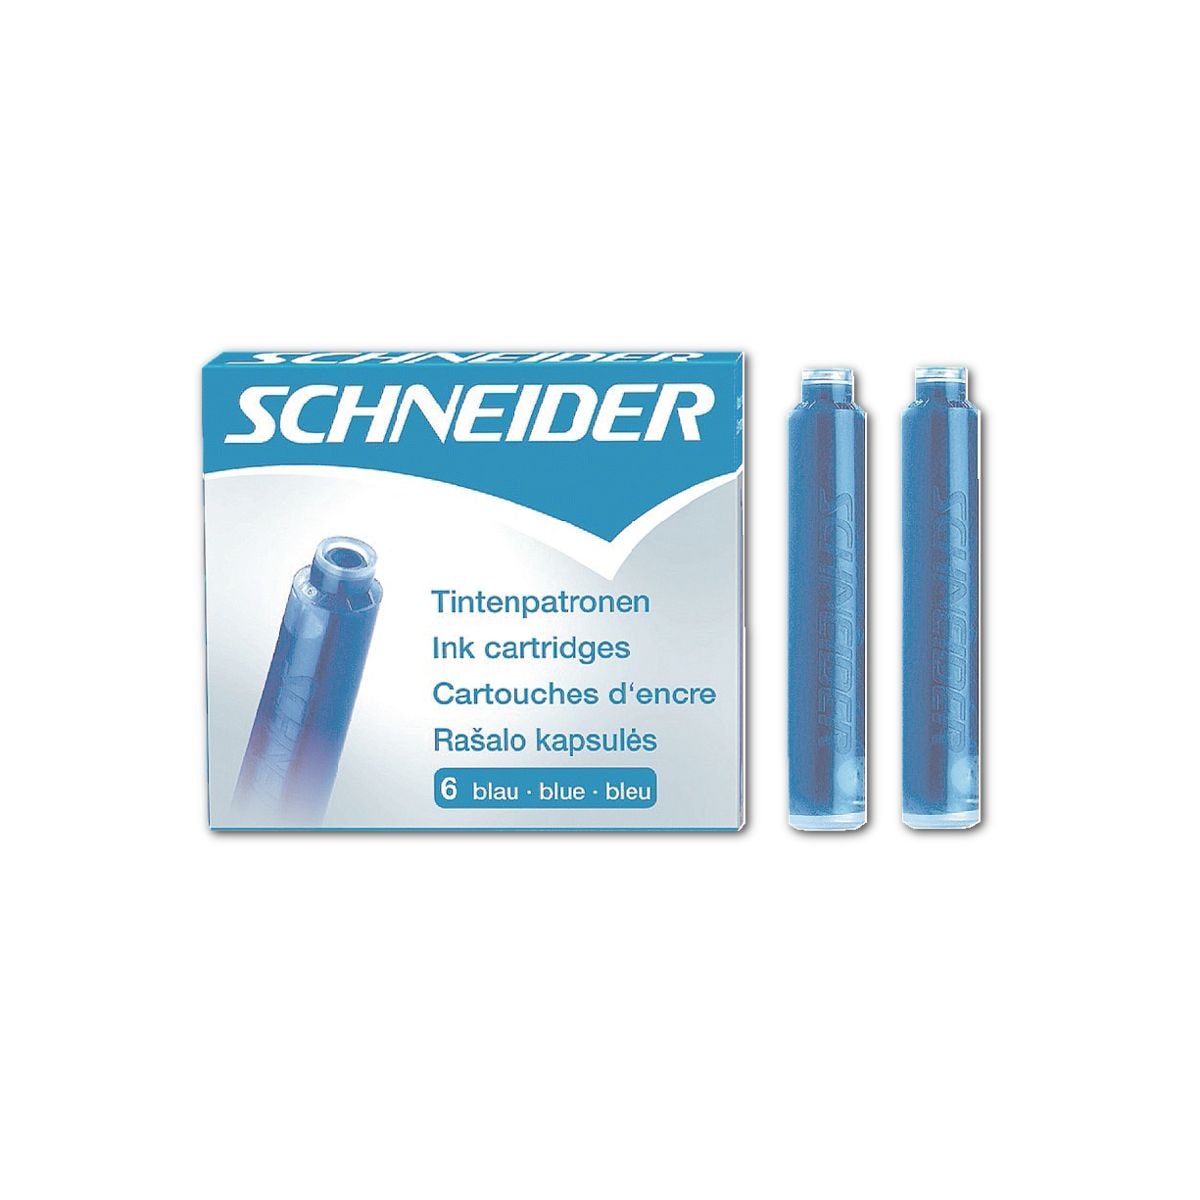 Schneider Tintenpatronen 6603